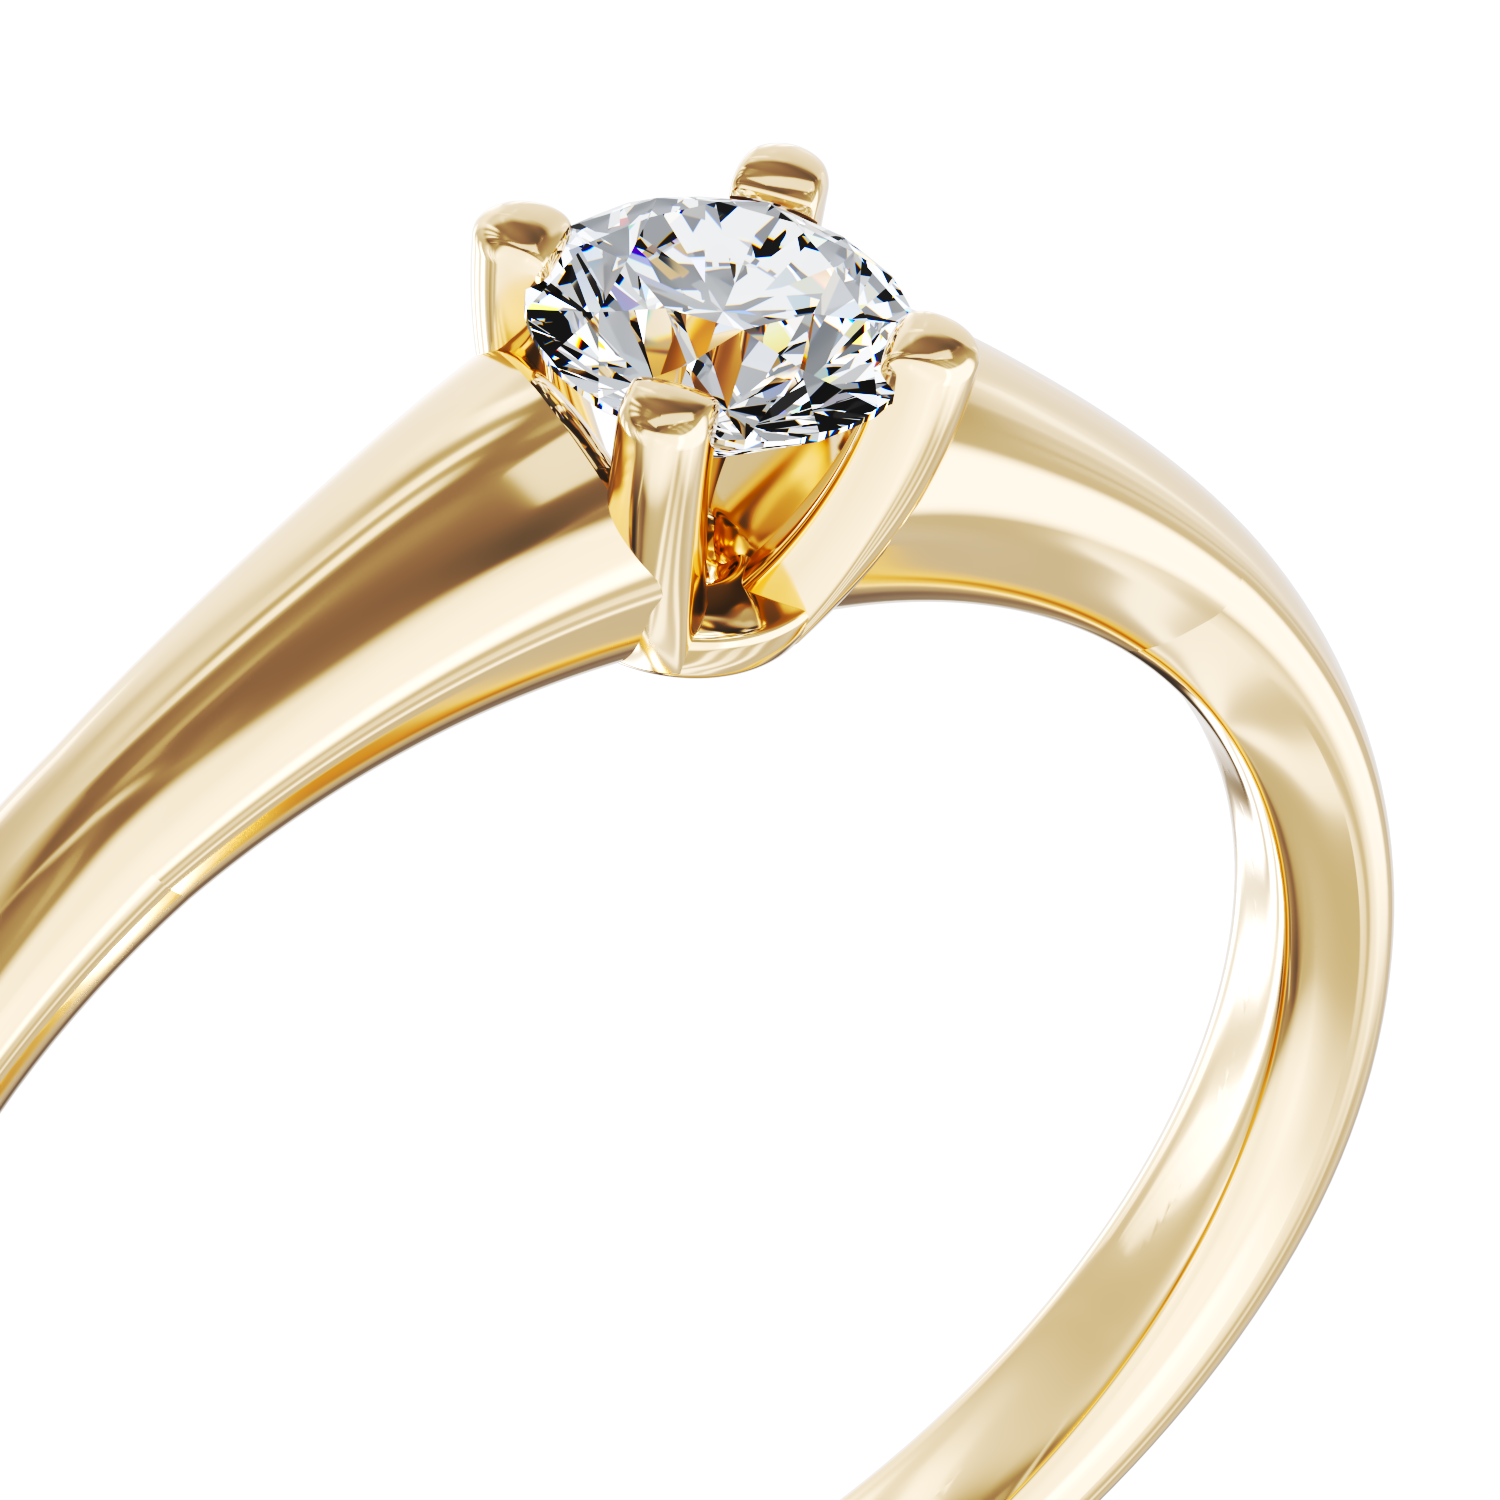 Eljegyzési gyűrű 18K-os sárga aranyból 0,145ct gyémánttal. Gramm: 2,10